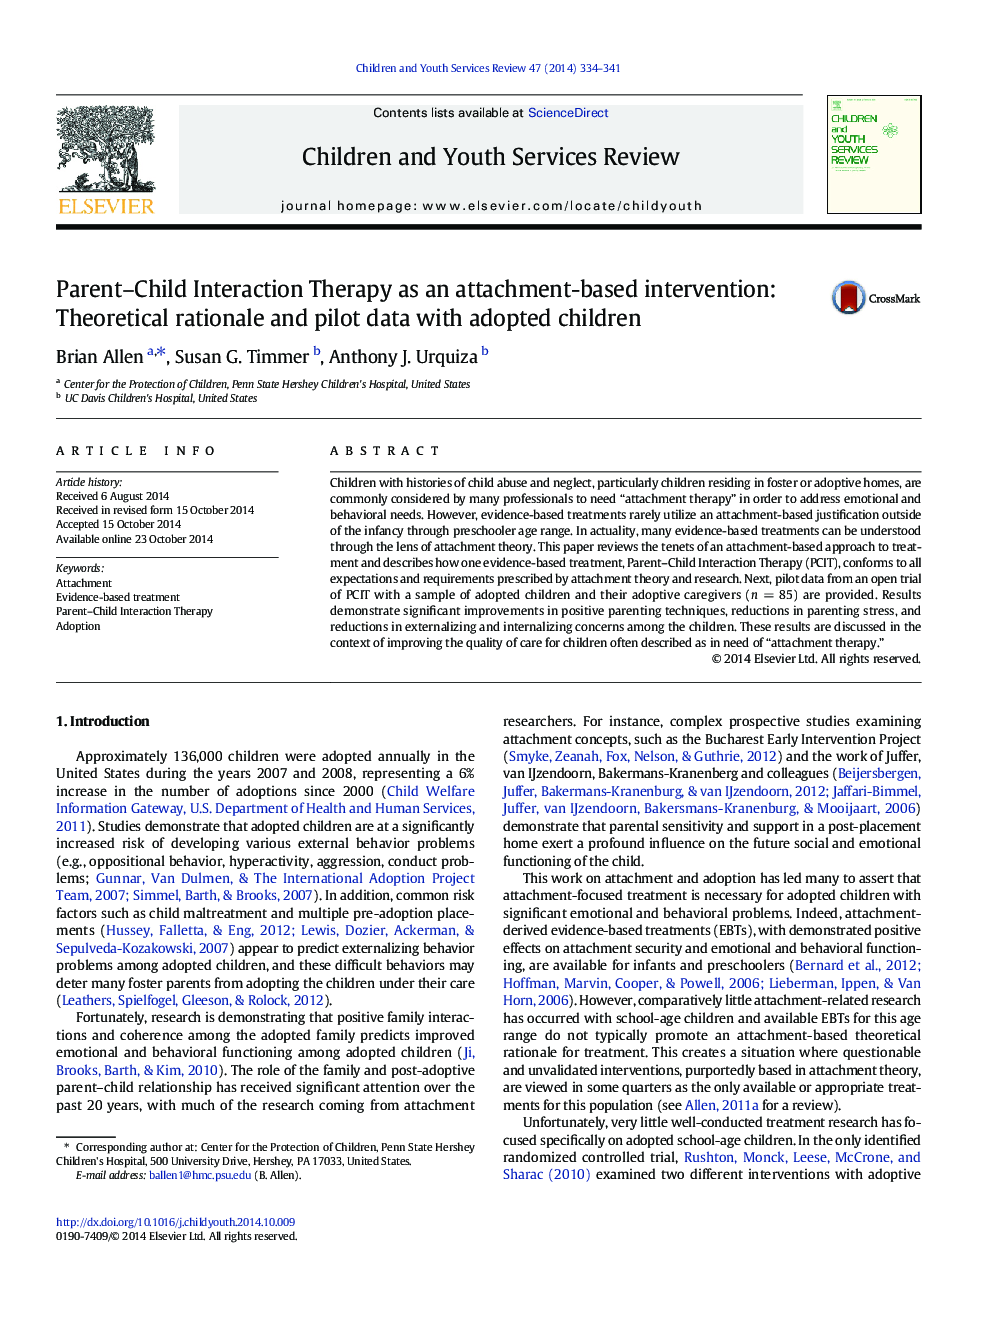 درمان تعامل والدین و کودک به عنوان یک مداخله مبتنی بر دلبستگی: منطق نظری و داده های آزمایشی با کودکان تصویب شده 